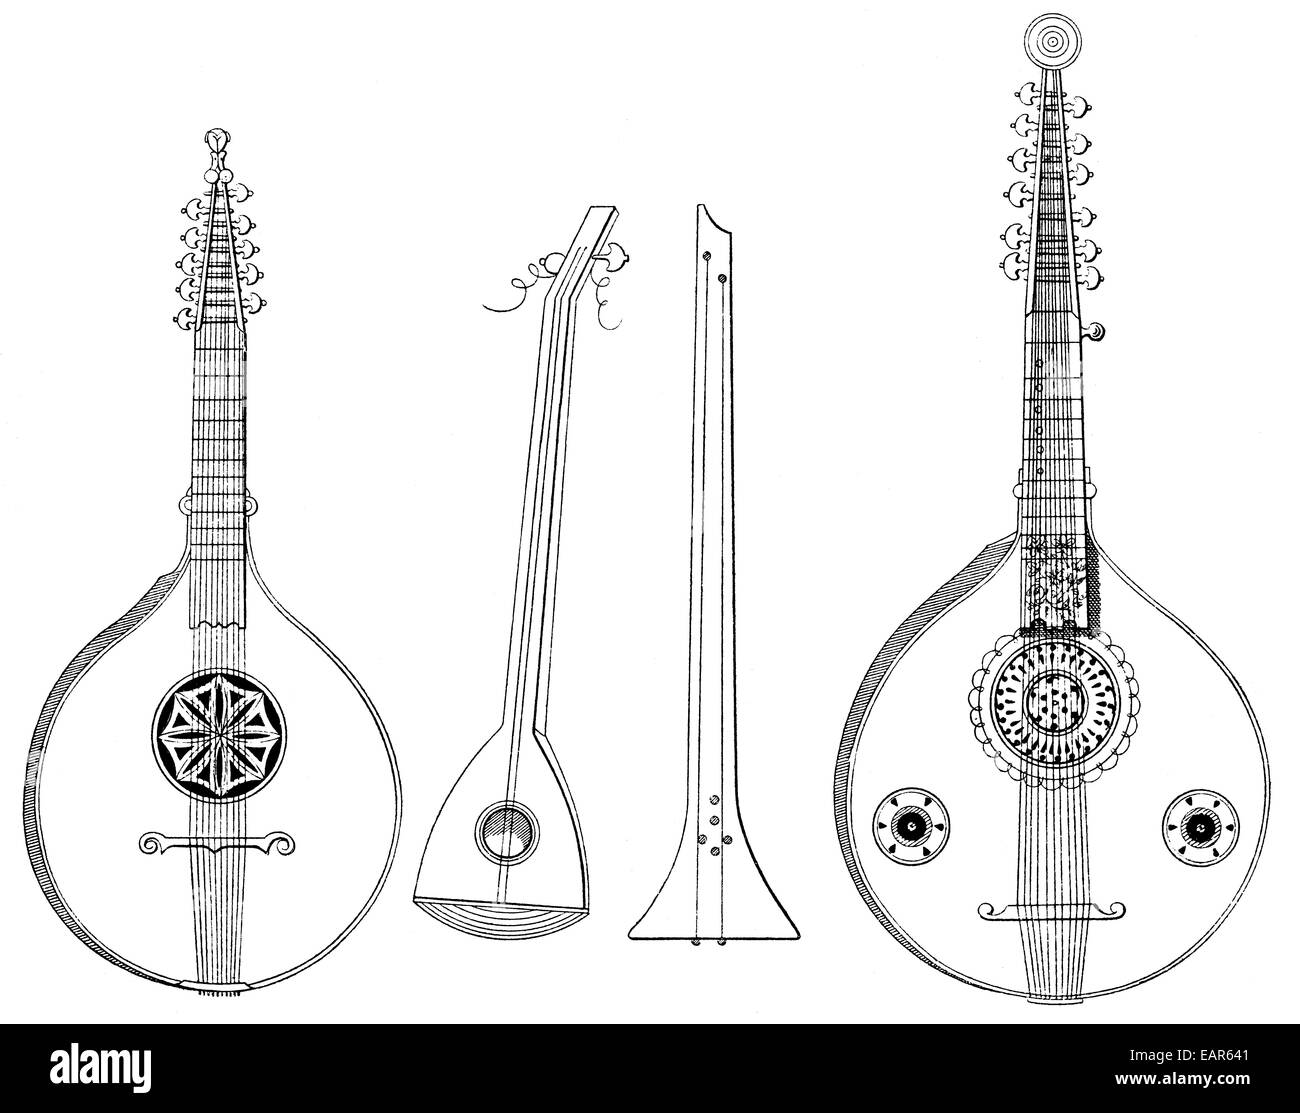 Musikinstrumente, italienische Zither von 1751, links, und einen Akkord Zither von 1720, Recht, Gegenspieler Musikinstrumente, links Stockfoto